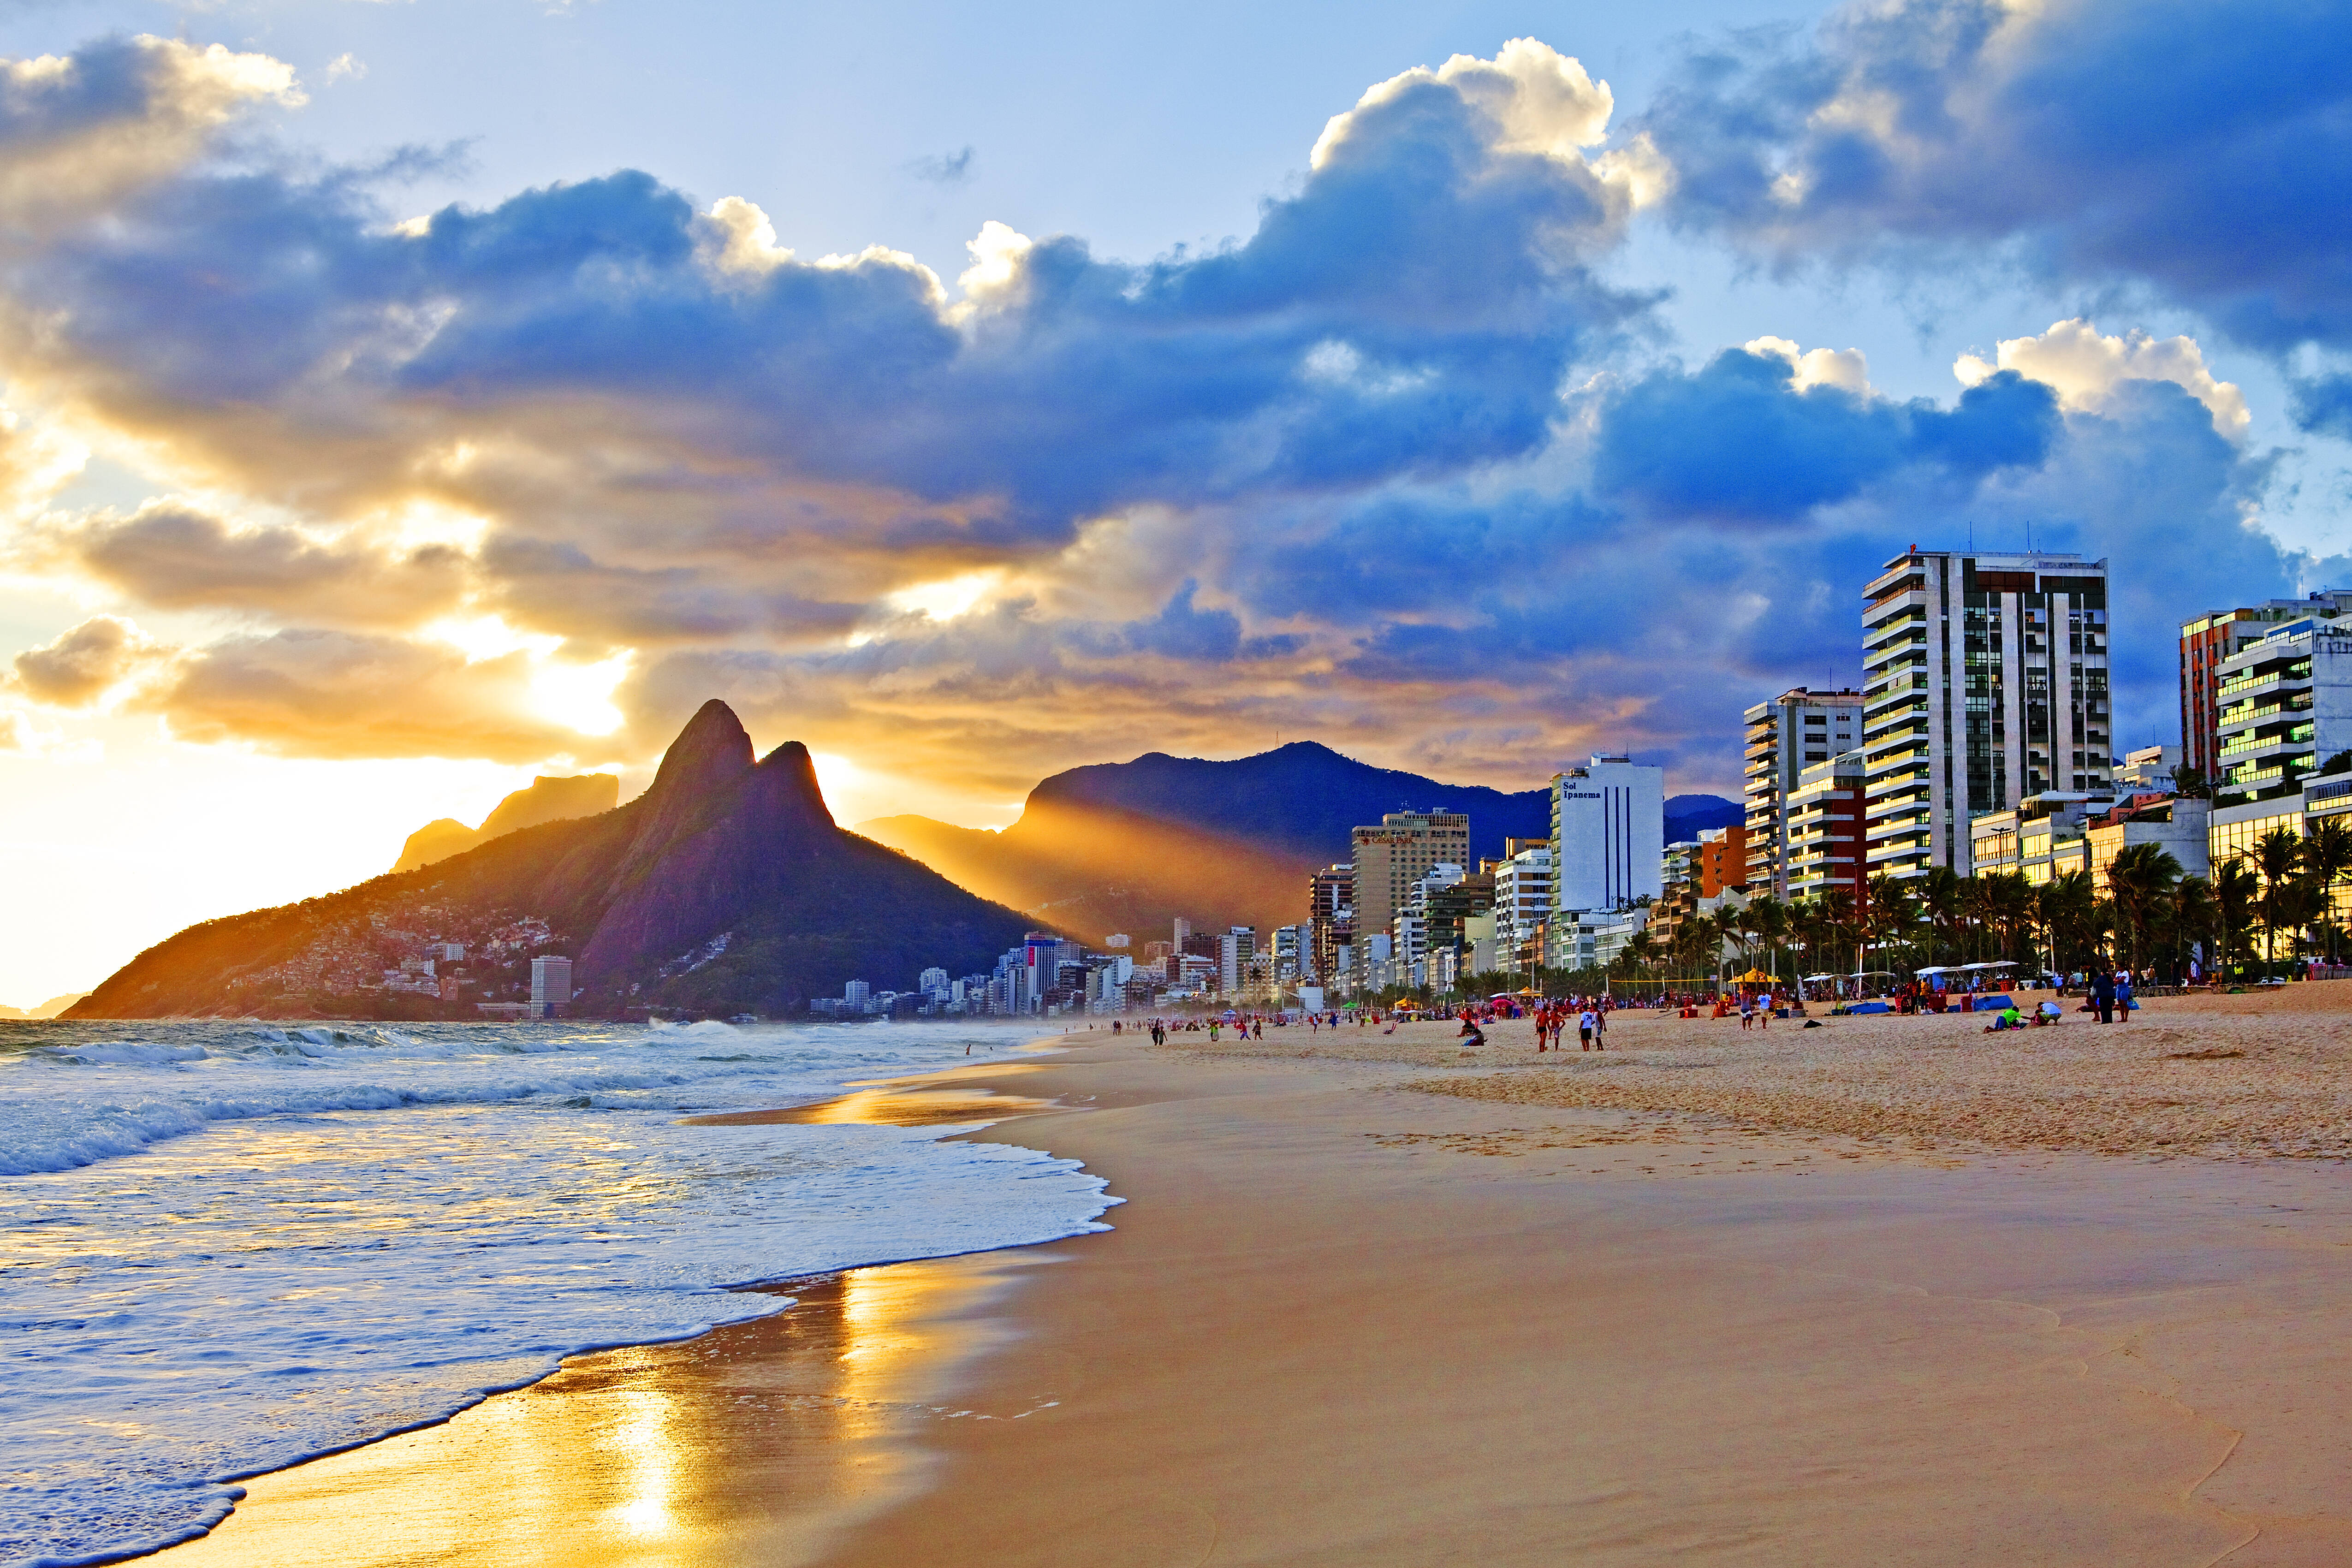 Imortalizada nas canções da bossa nova, a praia de Ipanema é visita obrigatória. Foto: Getty Images